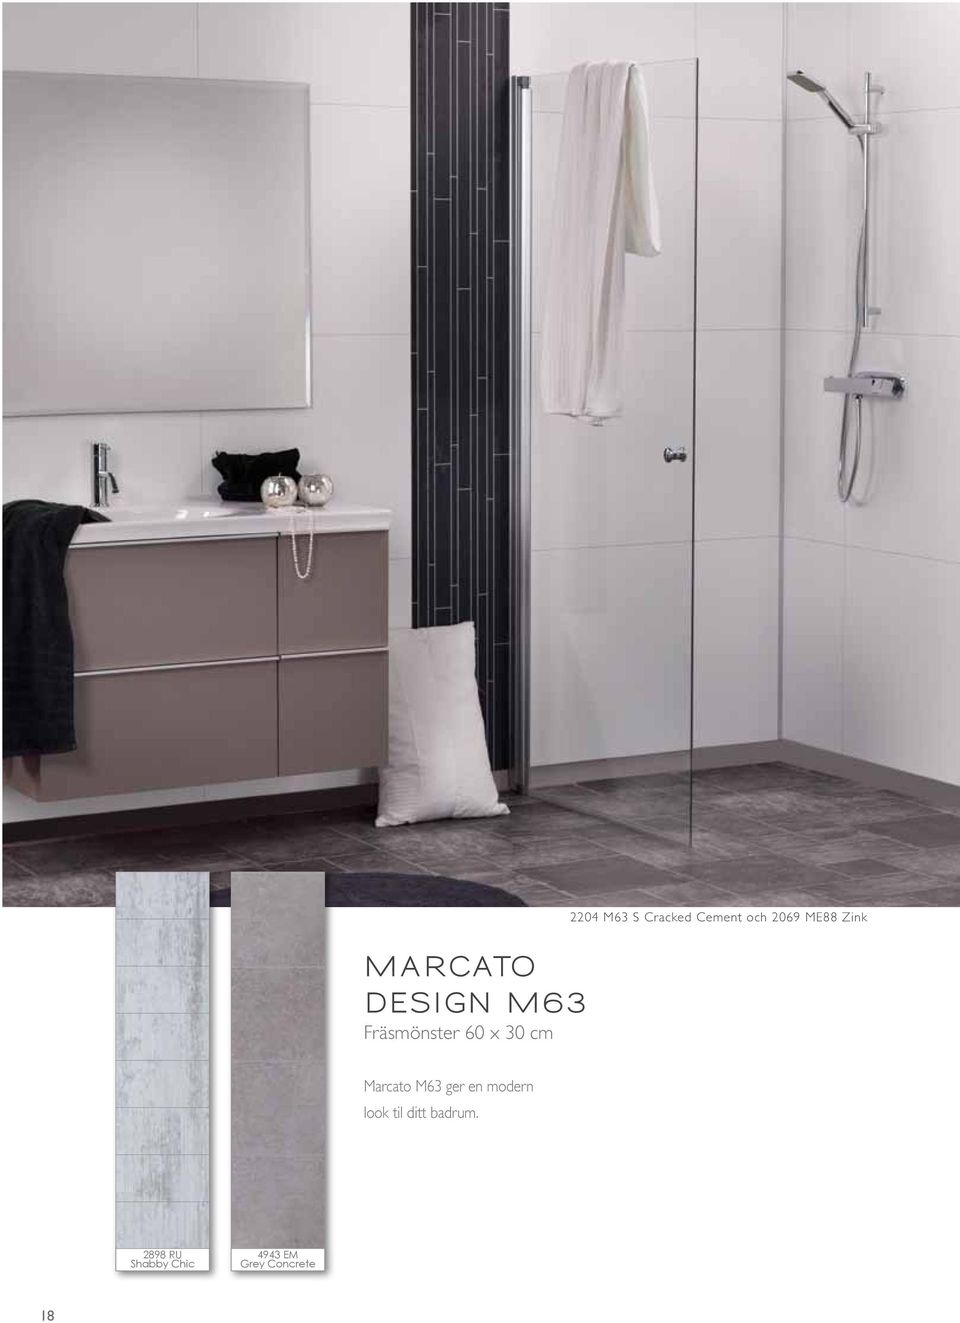 Marcato M63 ger en modern look til ditt